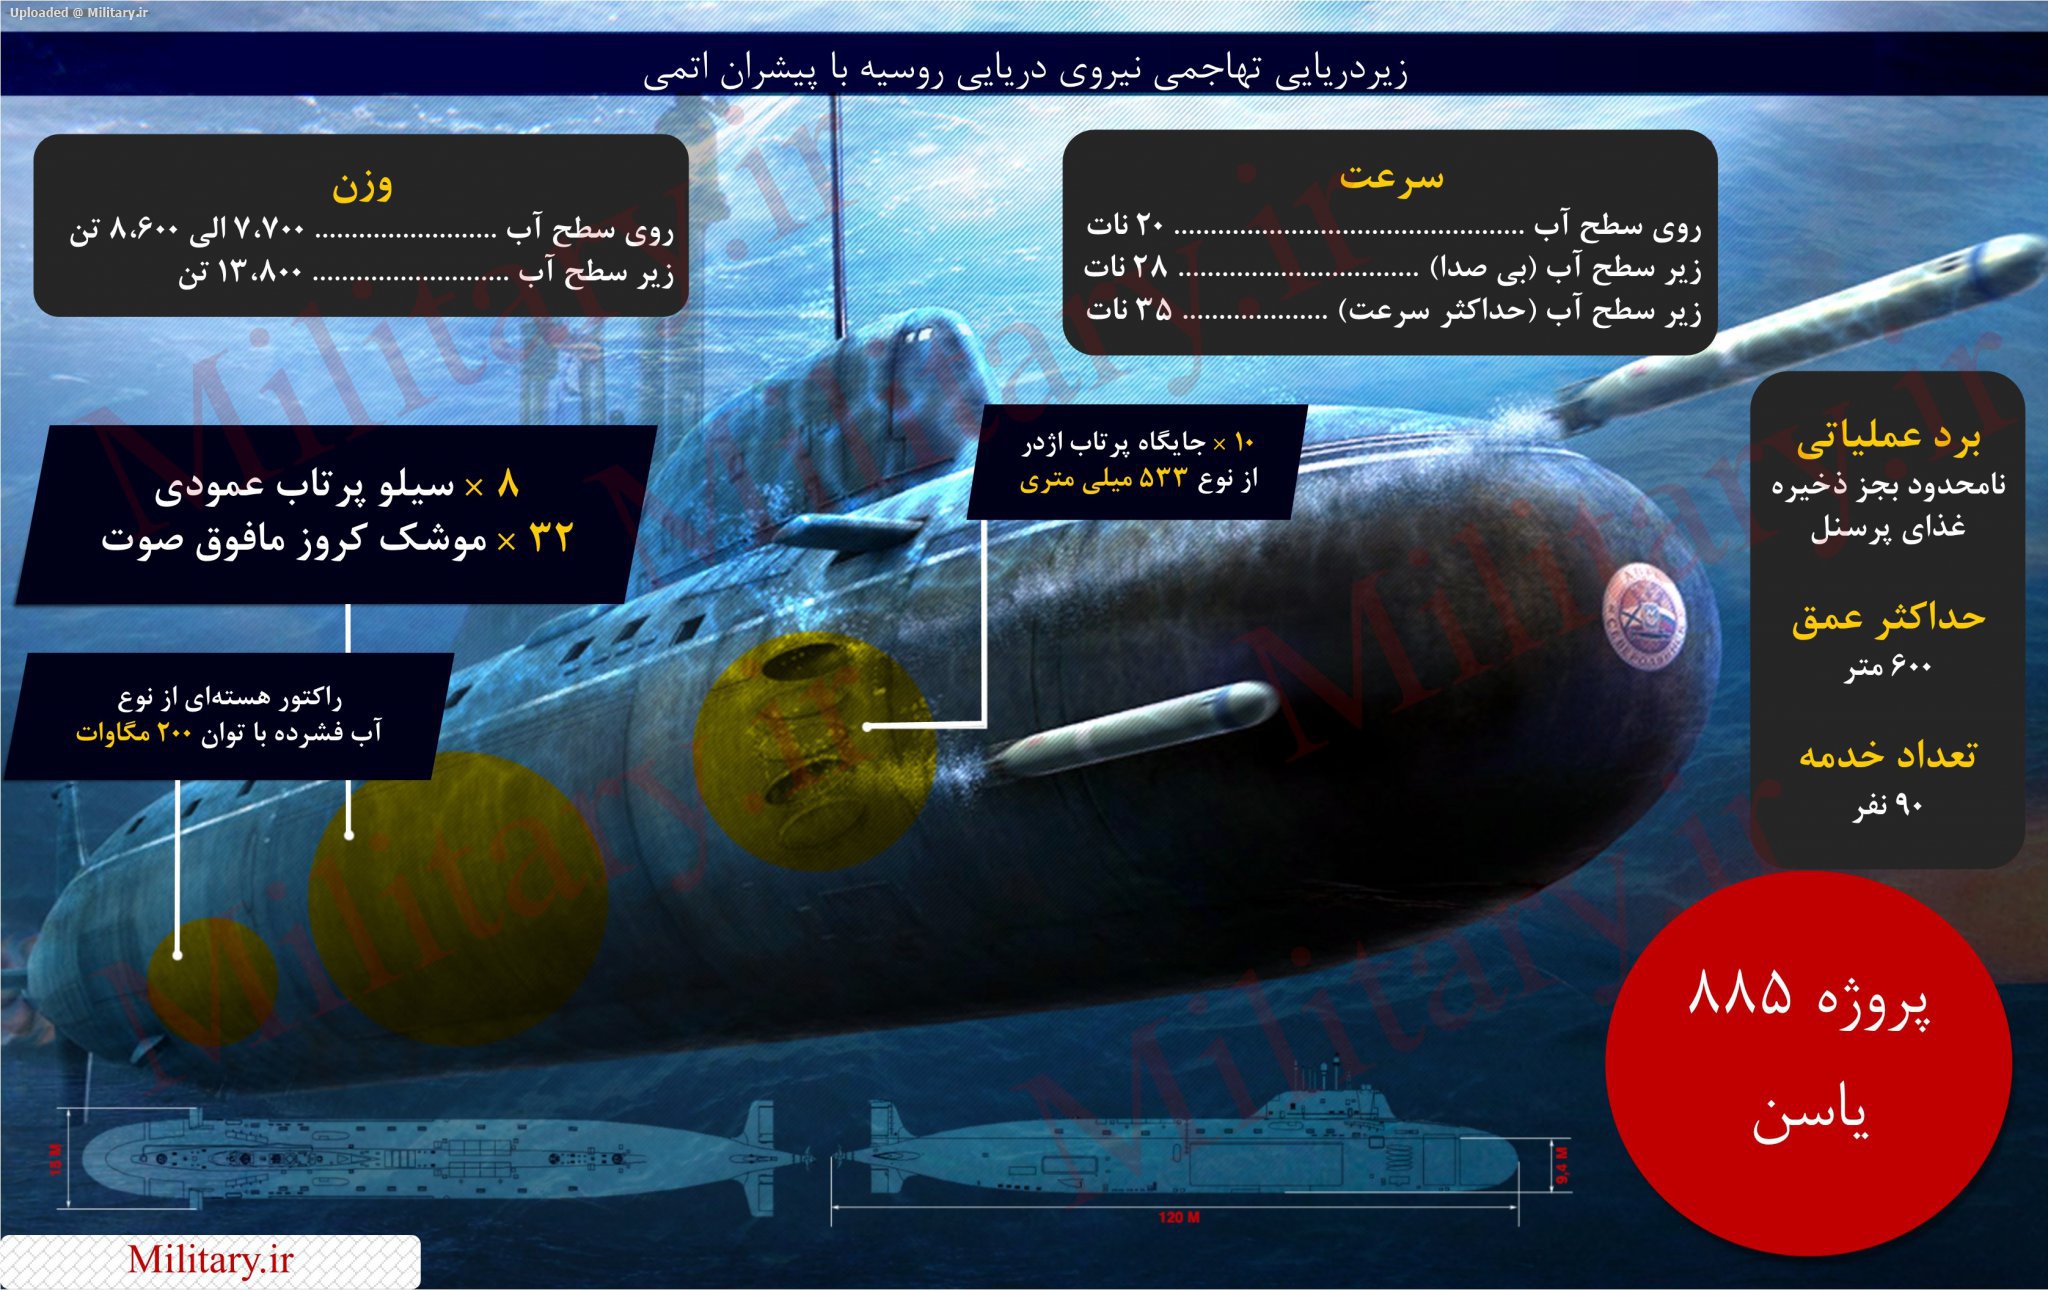 013_nuclear_submarine_military_ir.jpg